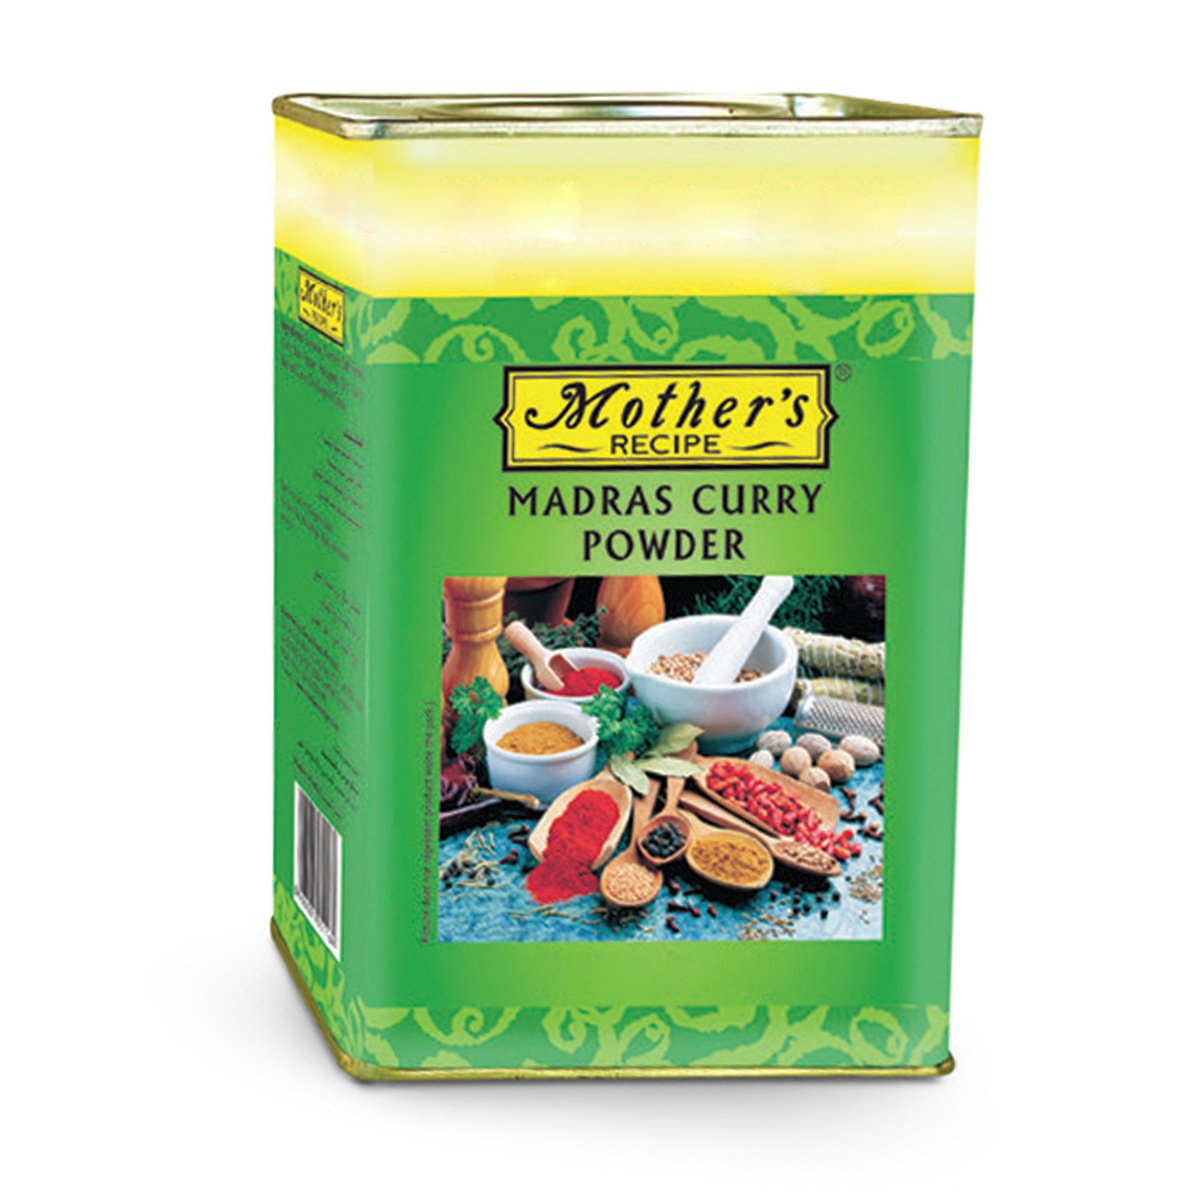 Mother's Recipe Madras Curry Powder 500 g